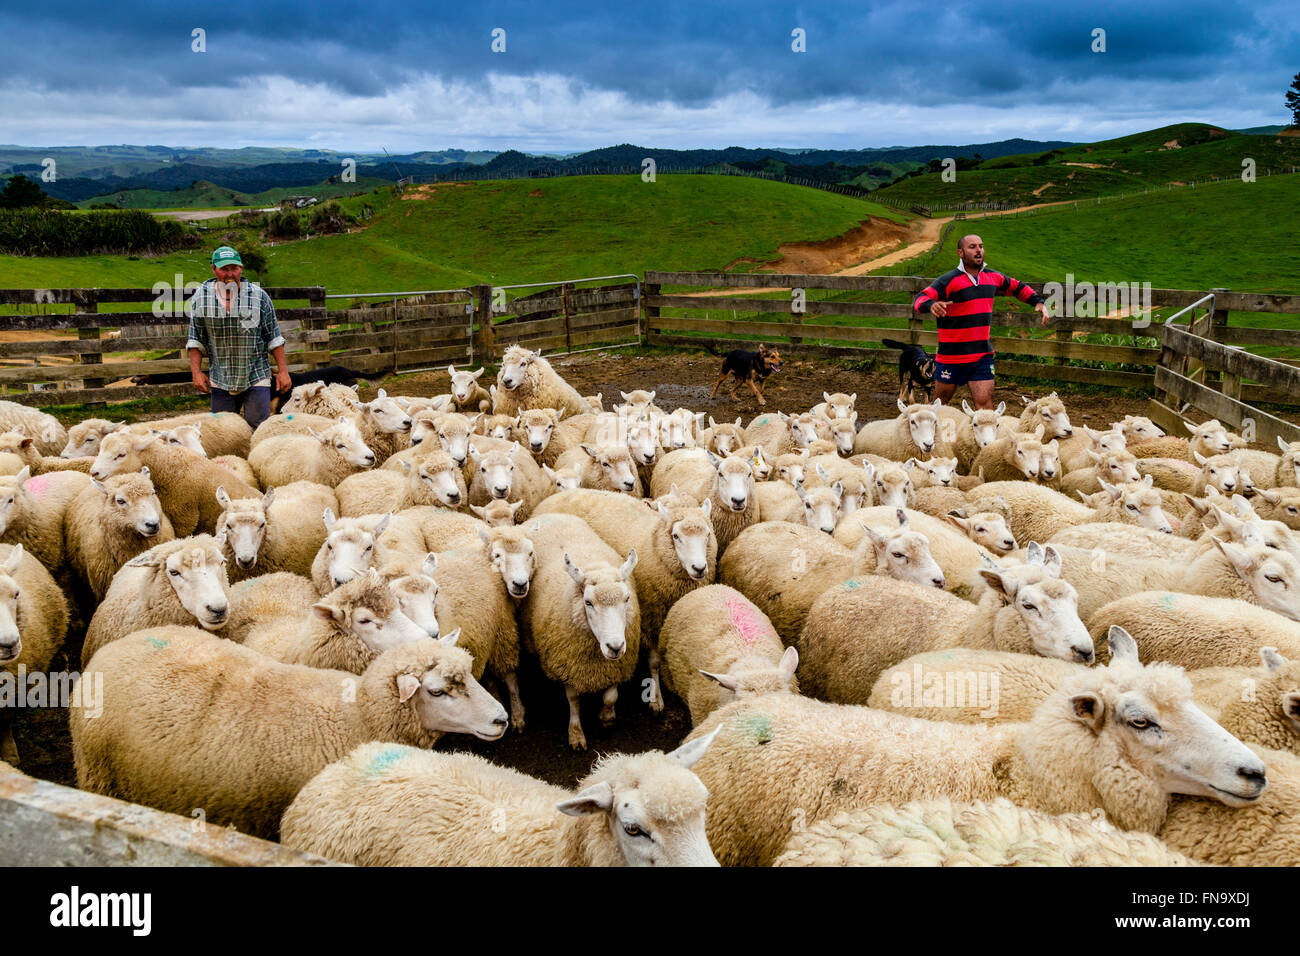 Sheep In A Sheep Pen Waiting To Be Sheared, Sheep Farm, Pukekohe, New Zealand Stock Photo